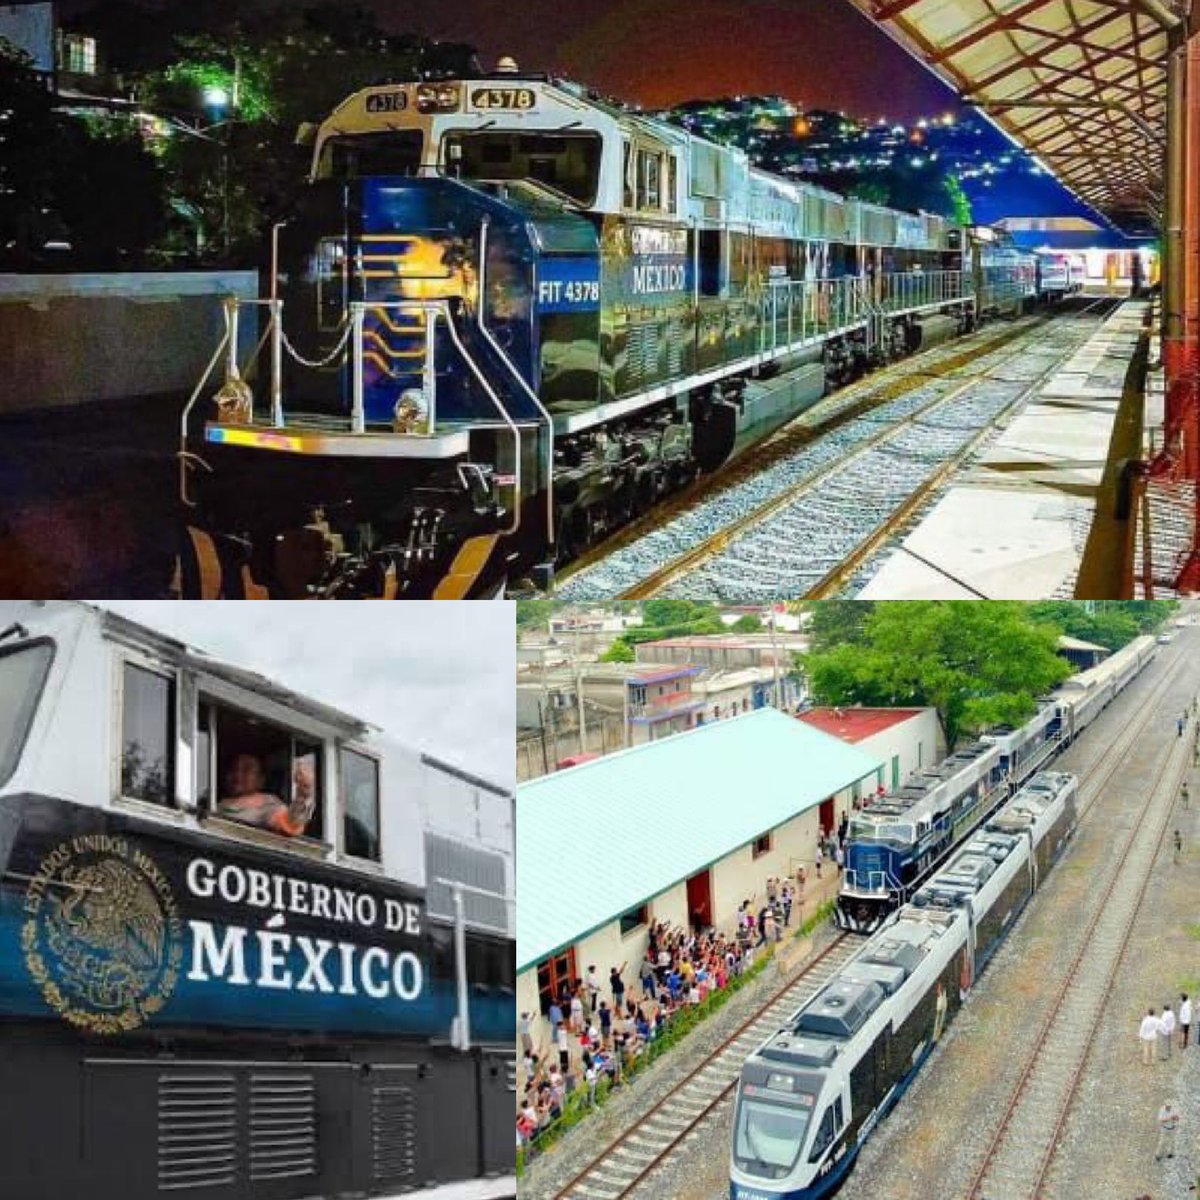 Mañana se inaugurará el Tren Interoceánico🚆 y resulta que viajar en él será más económico🫰🏼 que hacerlo en autobús⬇️

El tren va de Salina Cruz, Oaxaca a Coatzacoalcos, Veracruz. Conectará el #GolfodeMéxico con el #OcéanoPacífico.